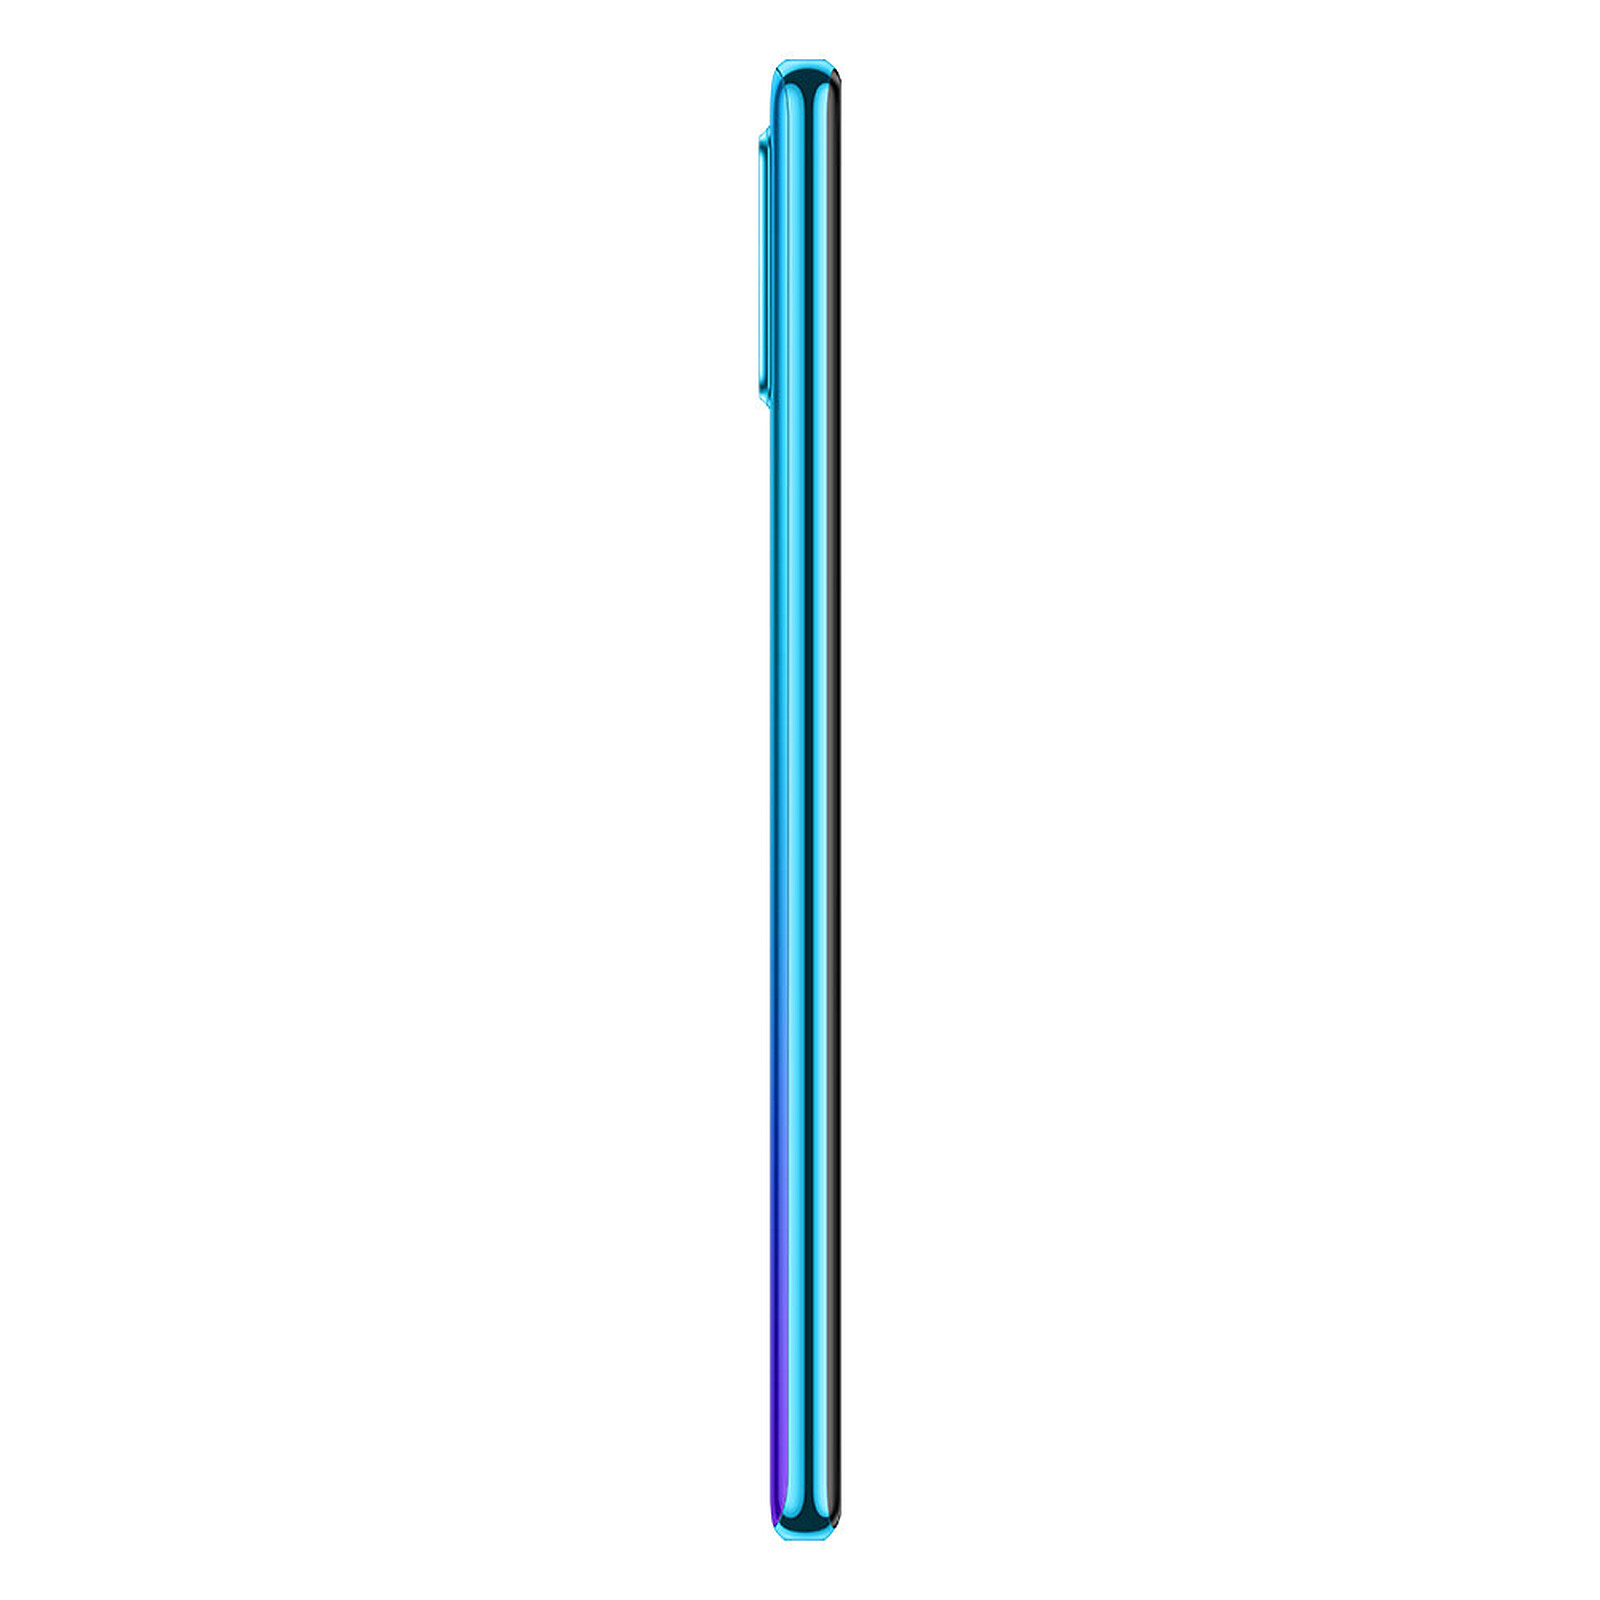 Huawei P30 Lite Bleu (4 Go / 128 Go) - Mobile & smartphone